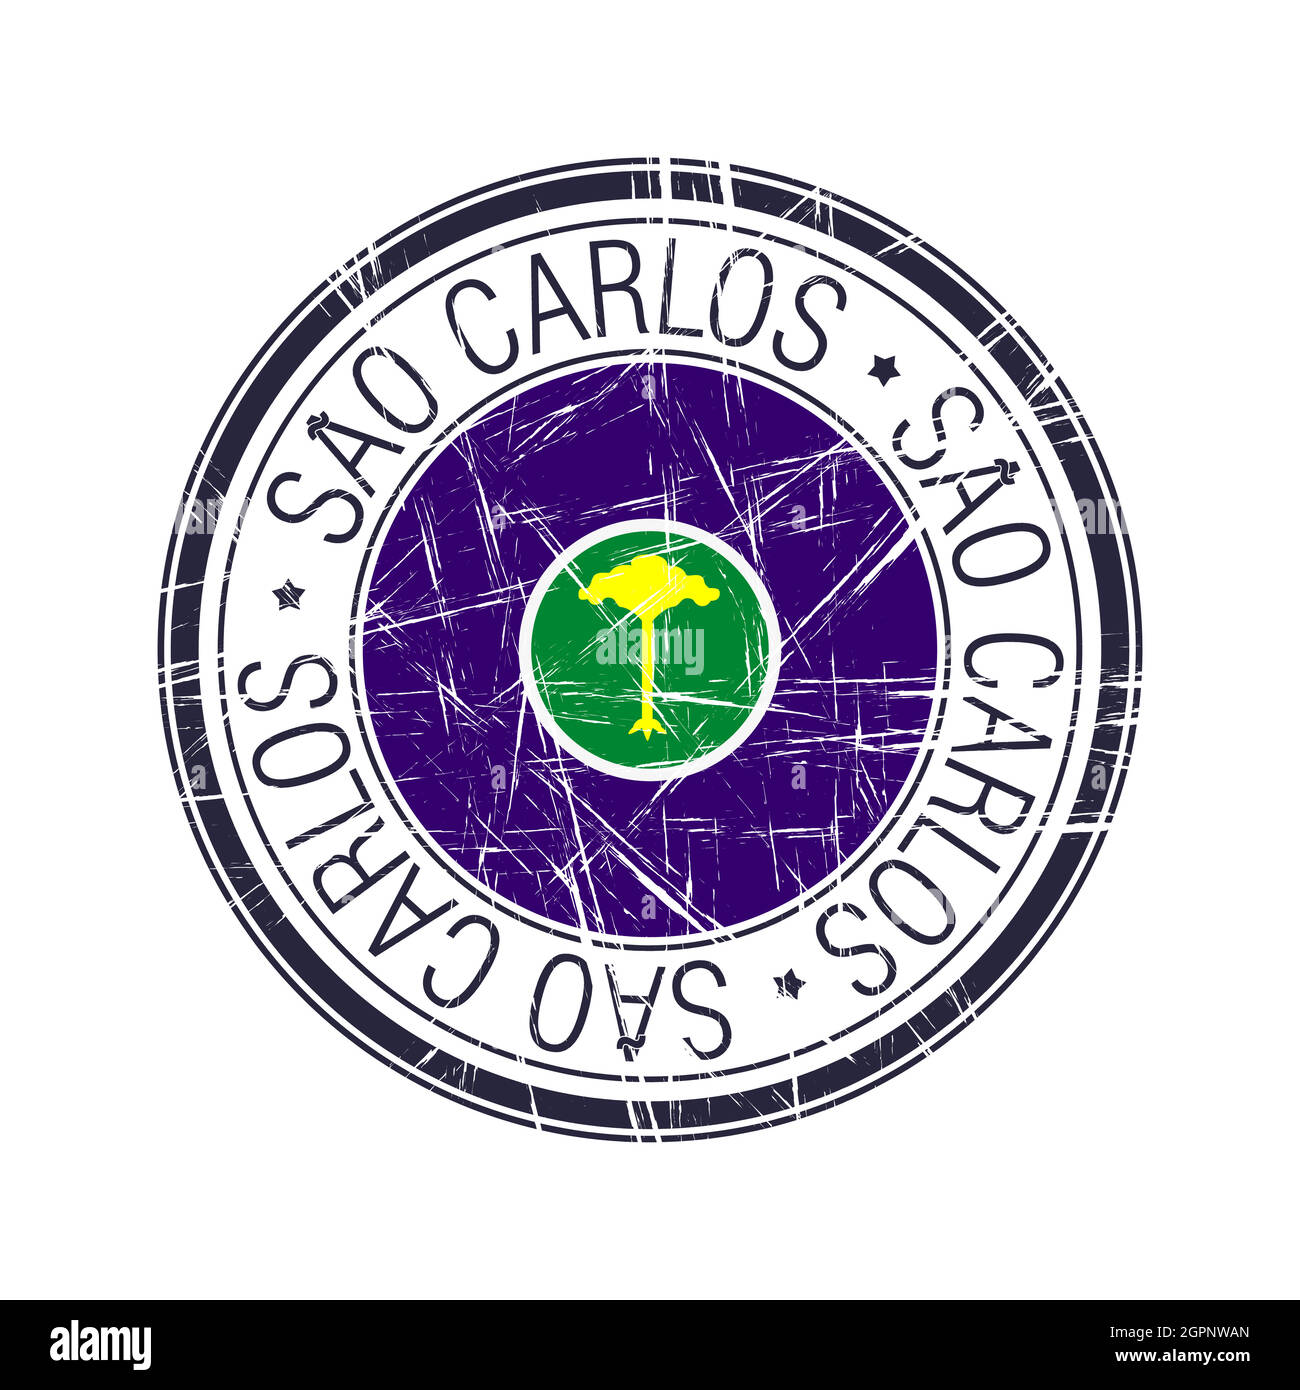 SAO CARLOS CLUB em São Carlos, SP - Consulta Empresa